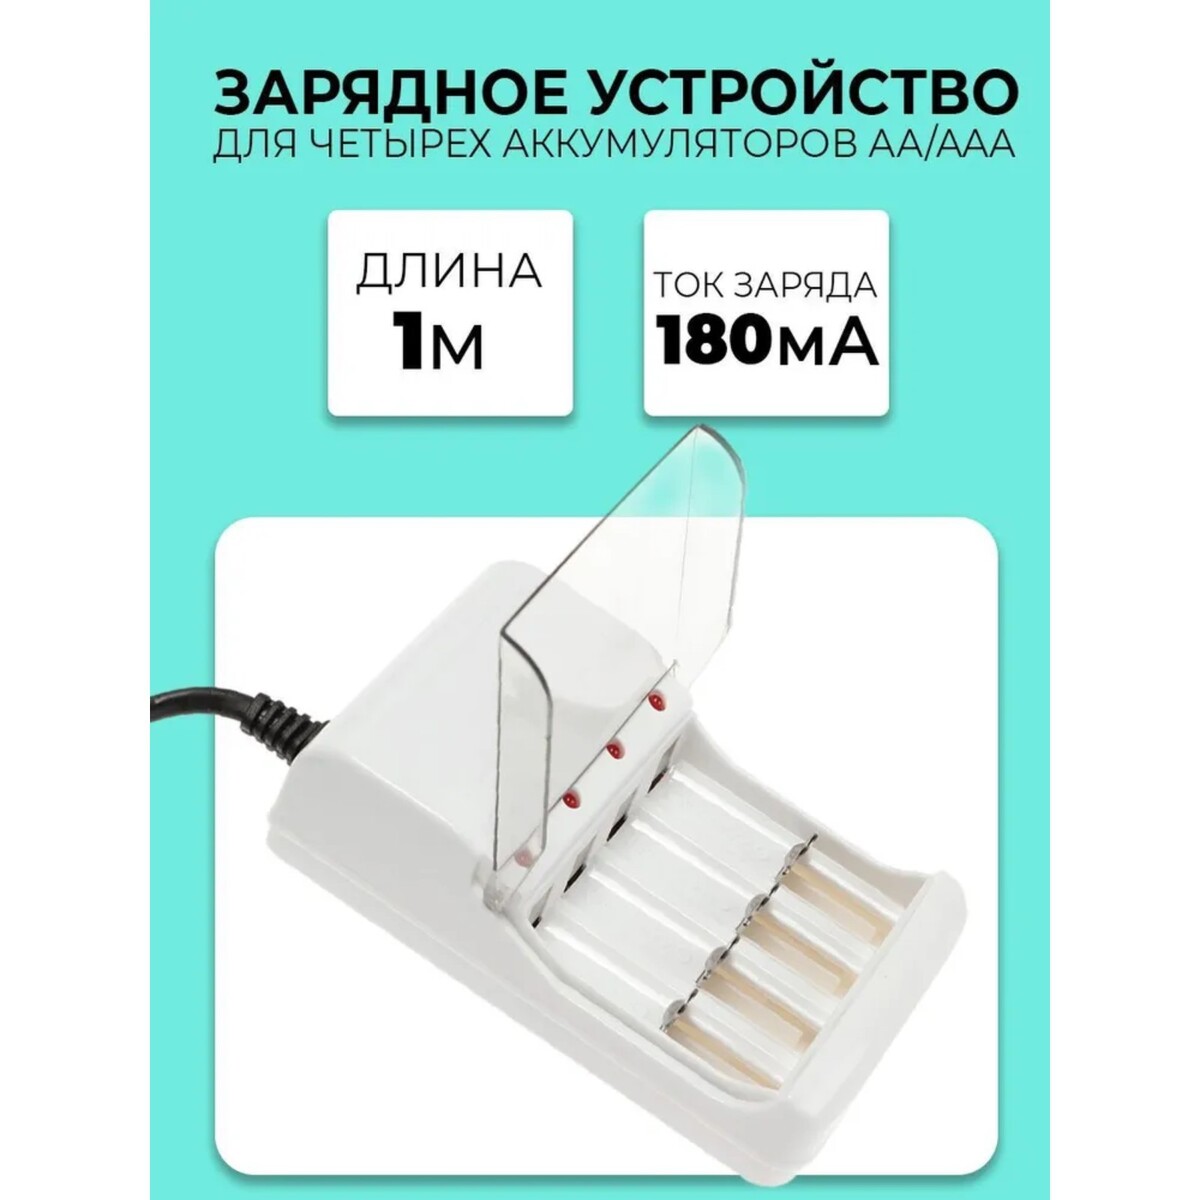 Зарядное устройство для четырех аккумуляторов аа или ааа chr-56, 1 м,ток заряда 180 ма,белое зарядное устройство для трех аккумуляторов аа uc 25 usb ток заряда 250 ма чёрное